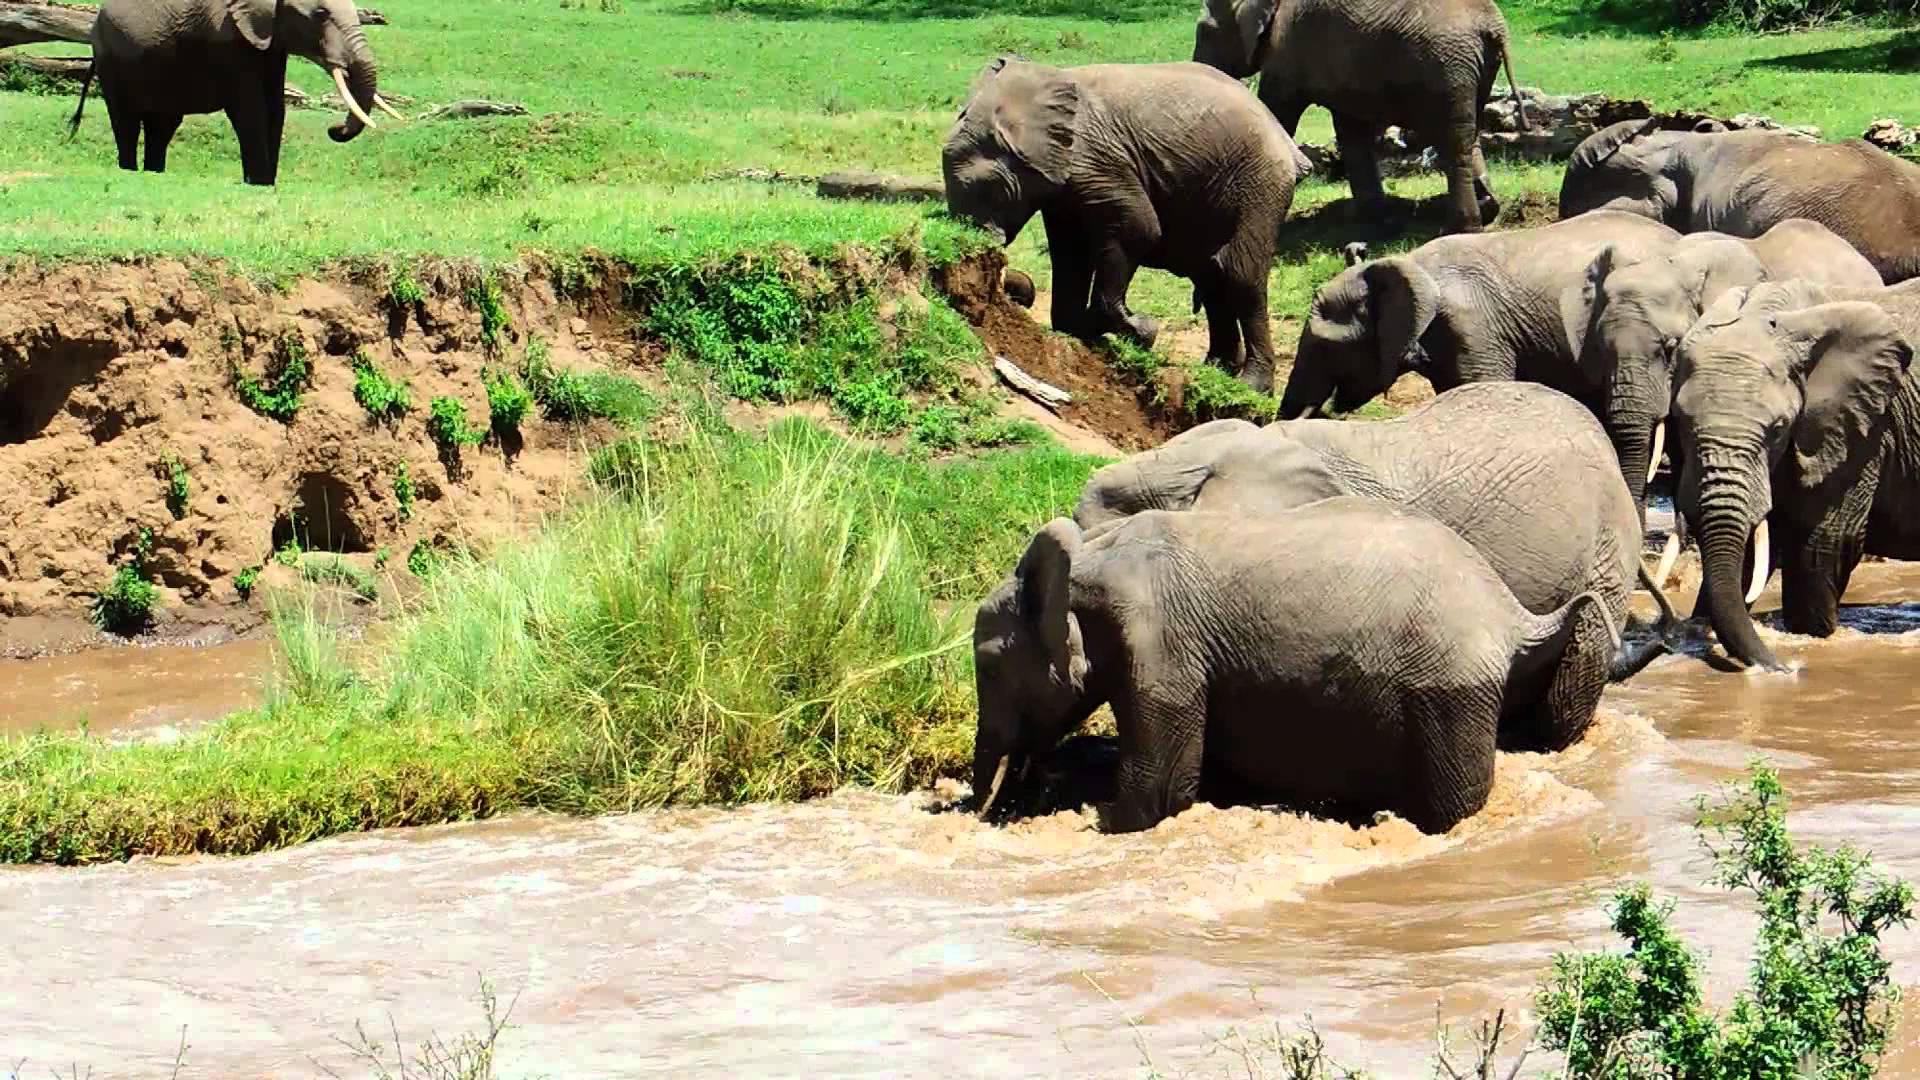 Małego słonia porywa nurt rzeki, film trzyma w napięciu do samego końca.